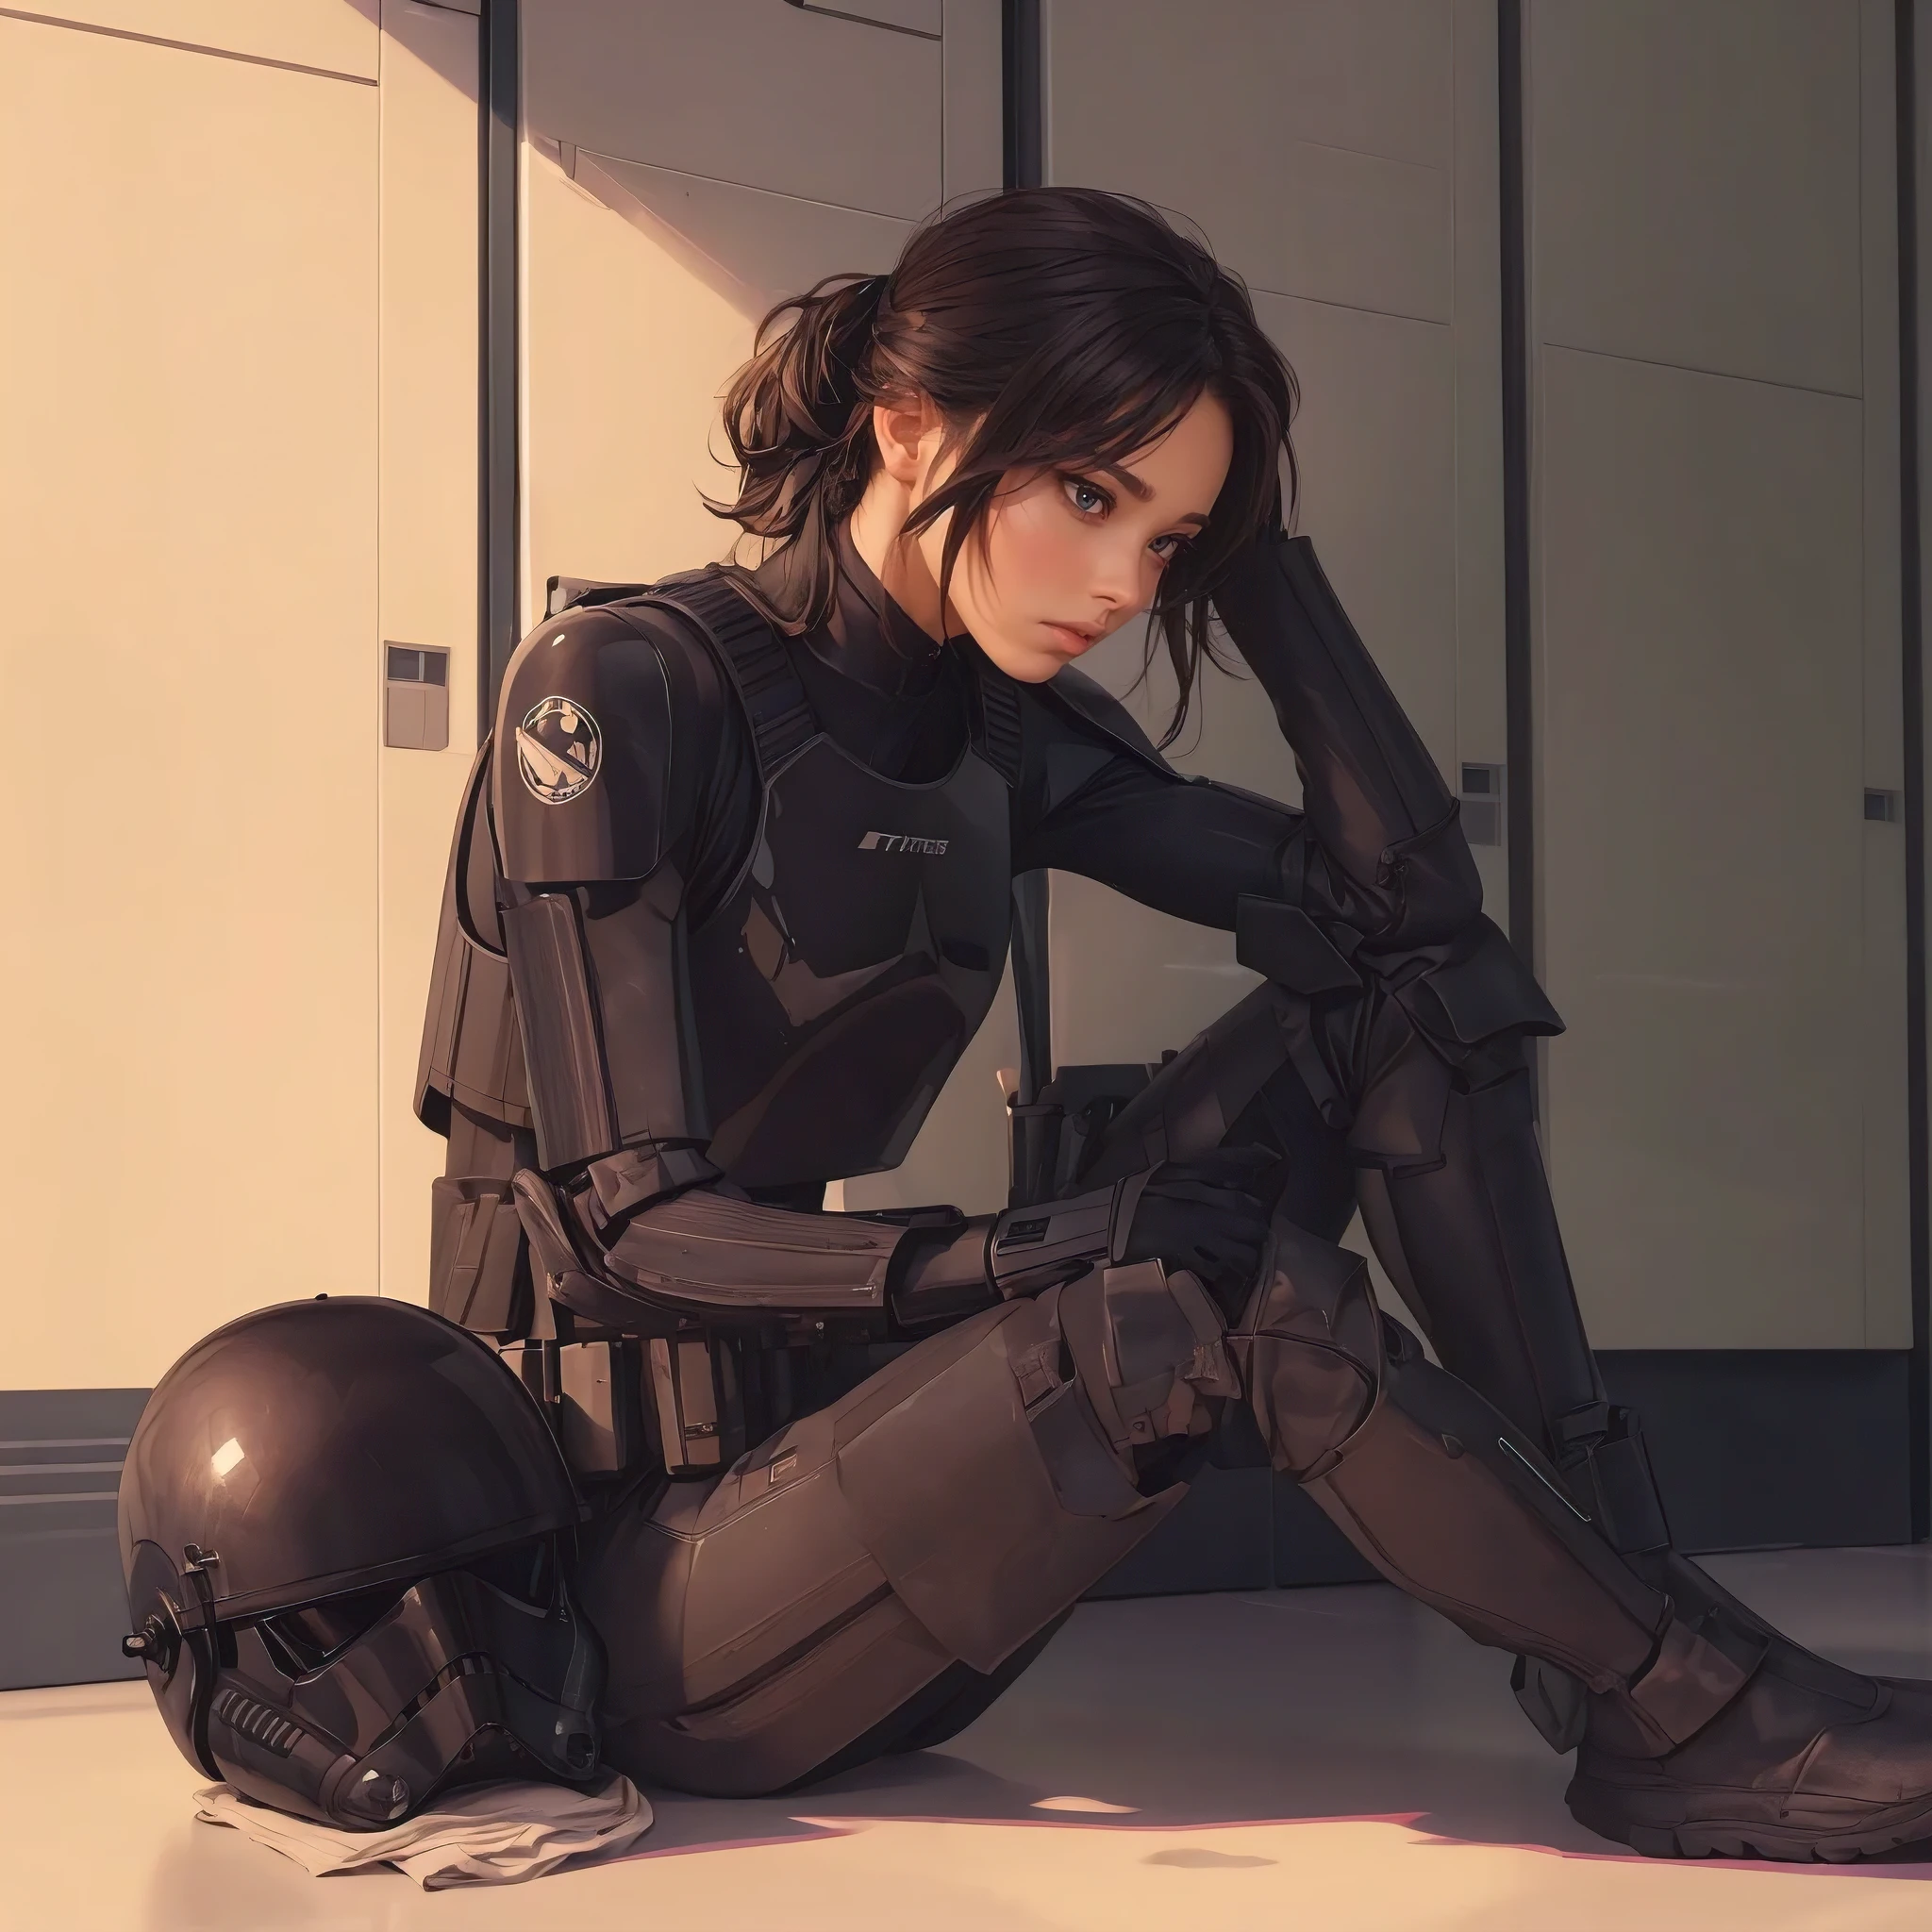 (傑作, 擊敗質量, 超詳細:1.3), 女冲锋队员, 坐在軍械庫更衣室, 黑色飛行員裝甲, 地板上的黑色頭盔, 全身, 簡單的角色設計